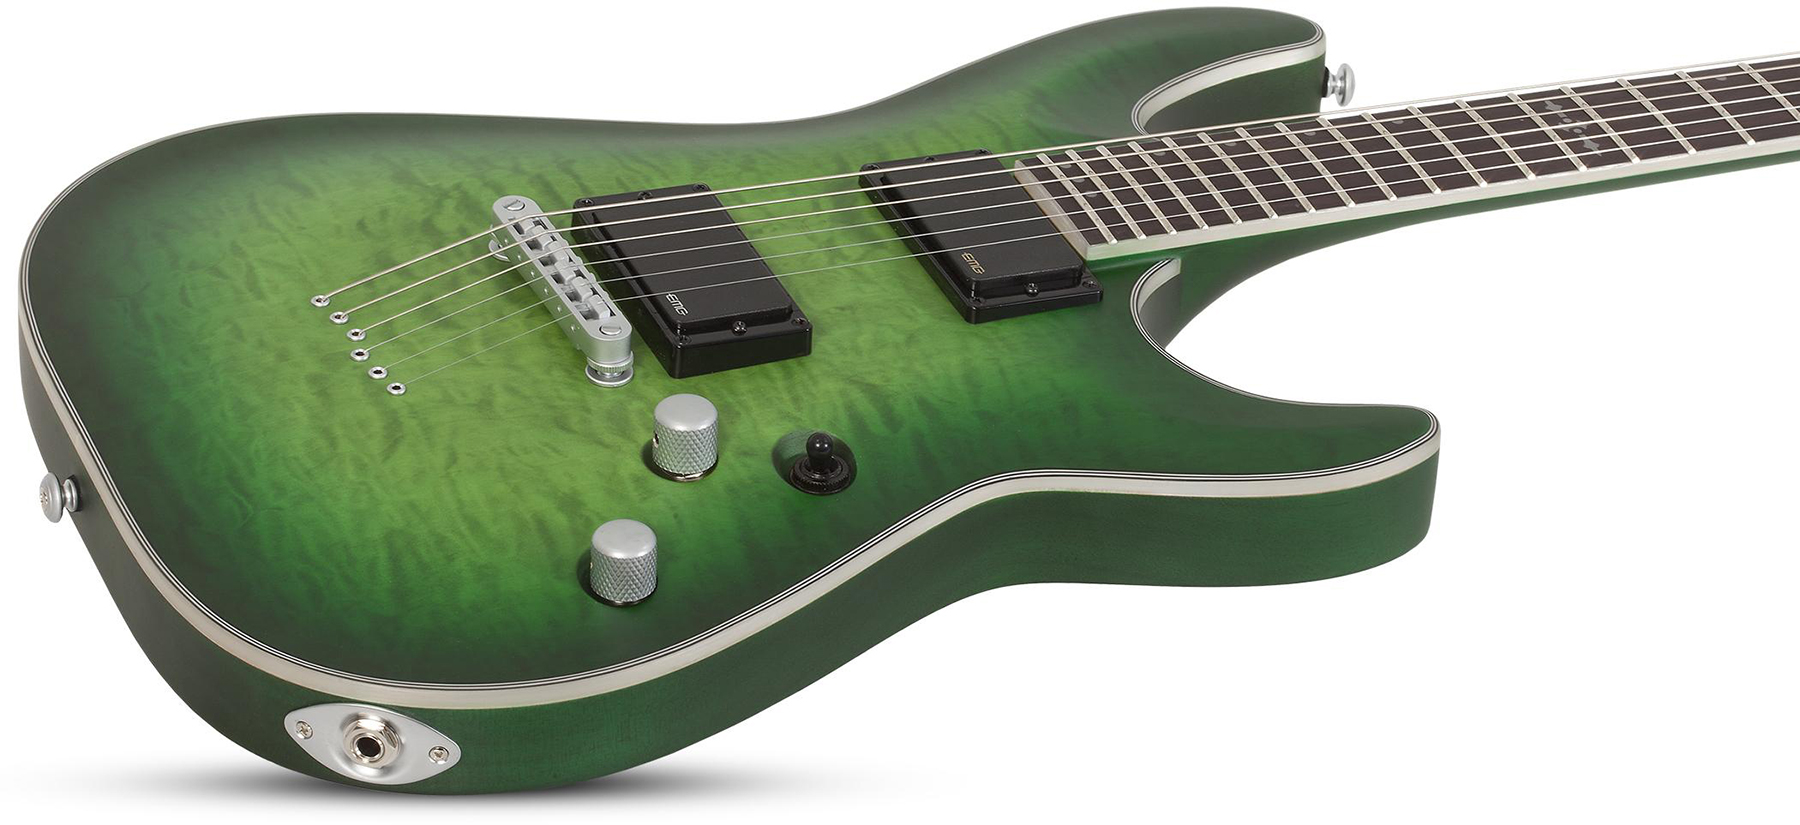 Schecter C-1 Platinum 2h Emg Ht Eb - Satin Green Burst - E-Gitarre in Str-Form - Variation 1